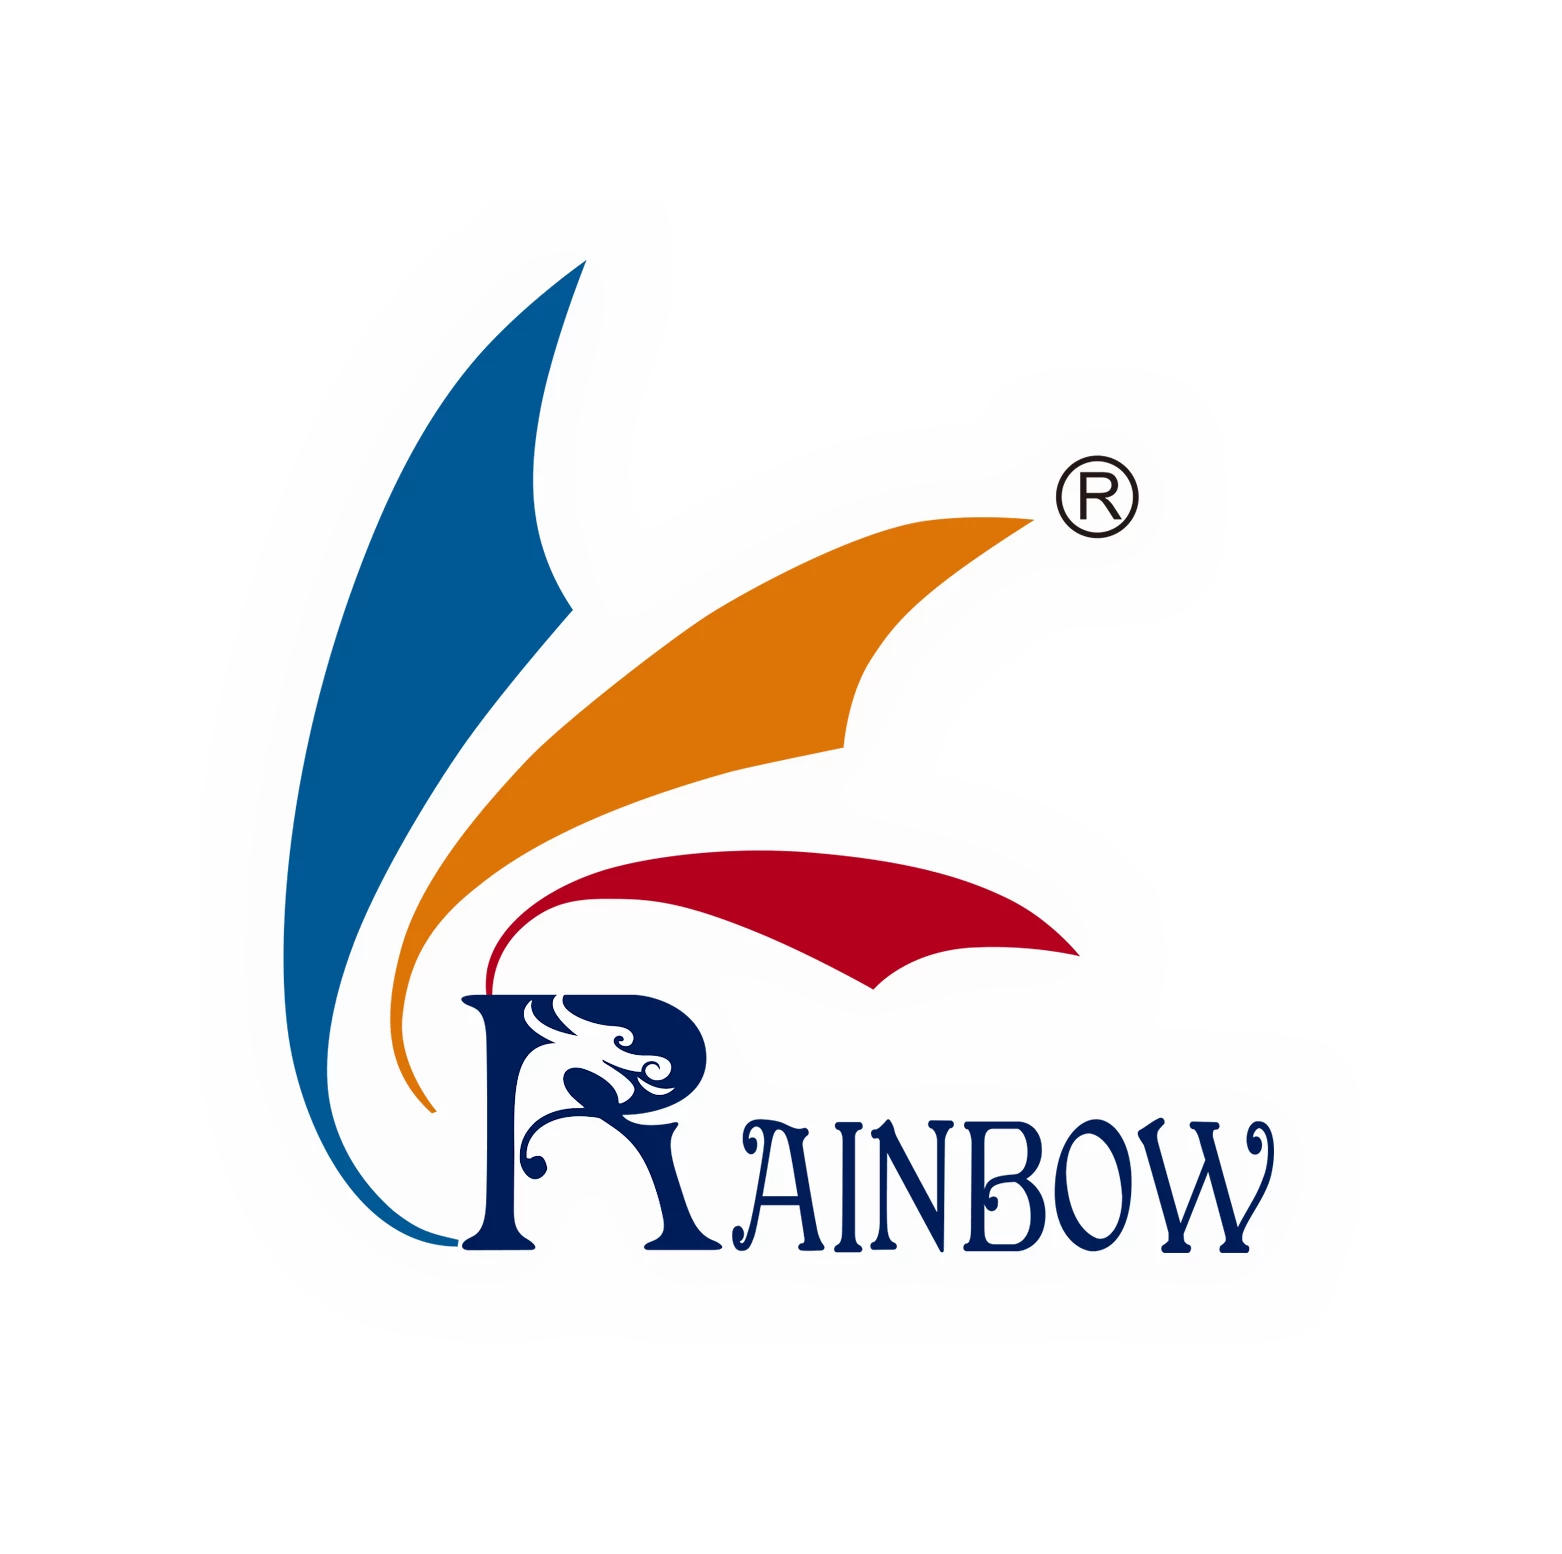 CÔNG TY TNHH CÔNG NGHỆ Rainbow, Ltd.